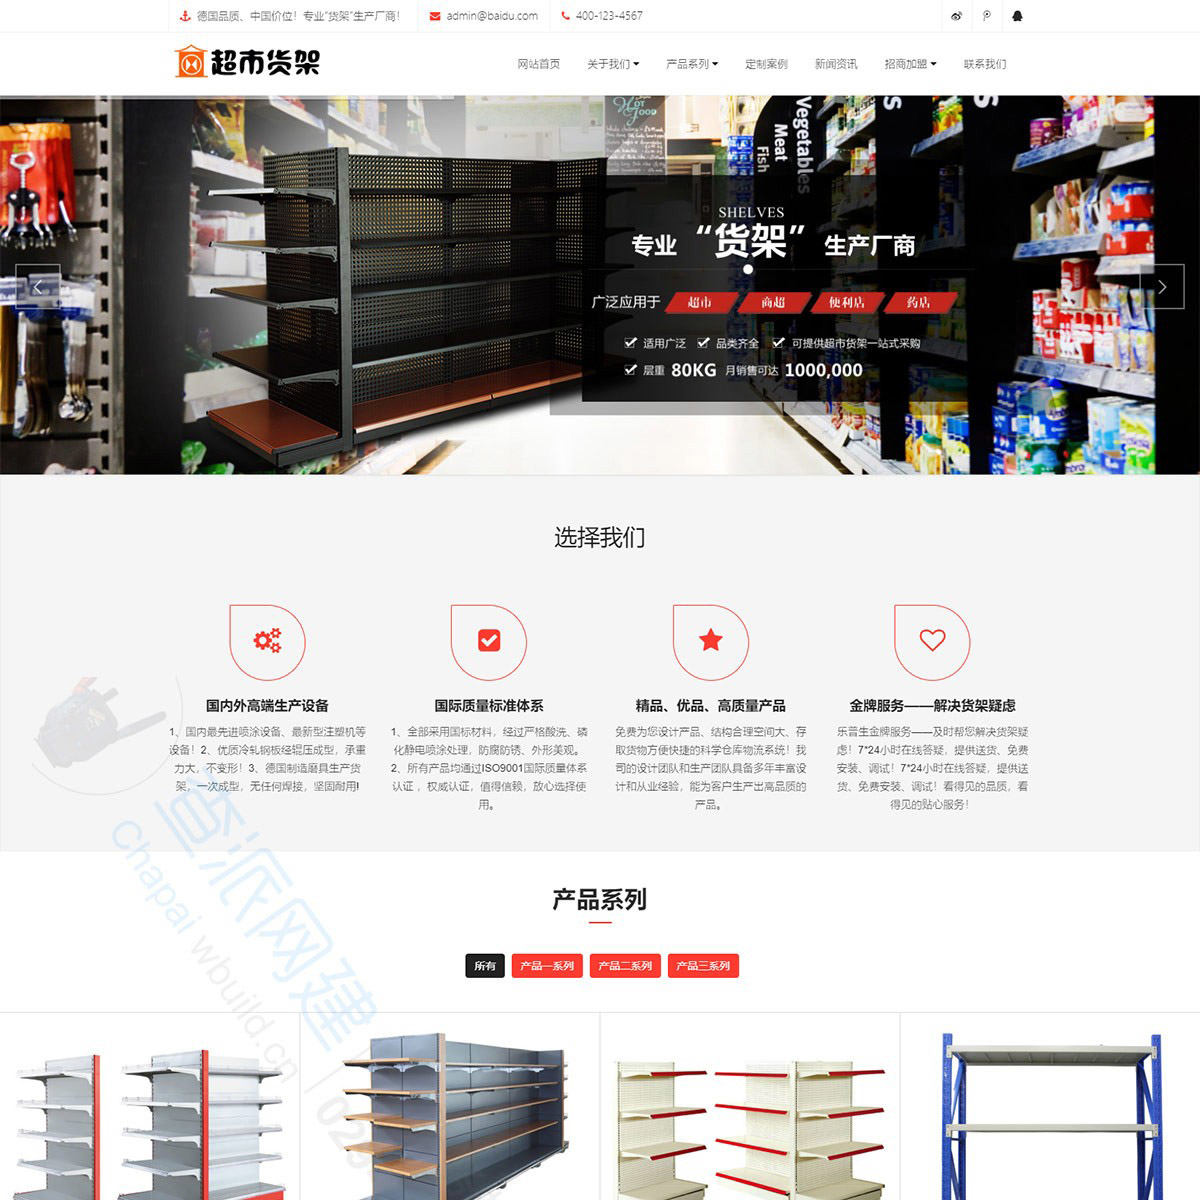 超市货架精品展架类响应式公司网站制作模板(自适应手机端)